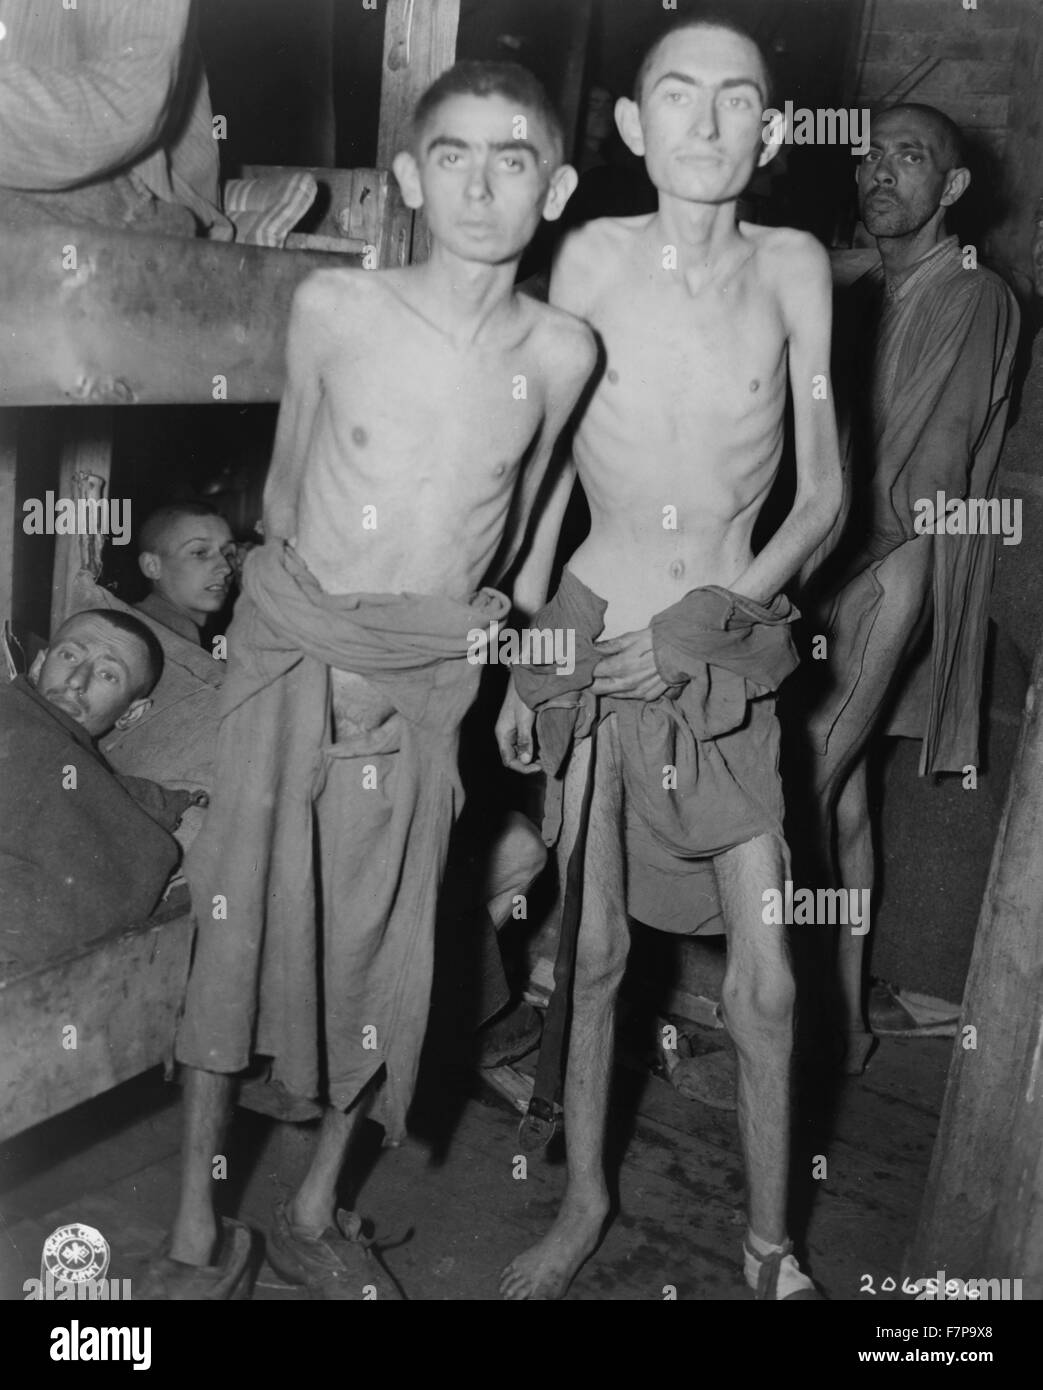 Diese Häftlinge des Konzentrationslagers Amphing (Ampfing) in Deutschland wurden vor kurzem von den Truppen der 3. US-Armee befreit. Stockfoto